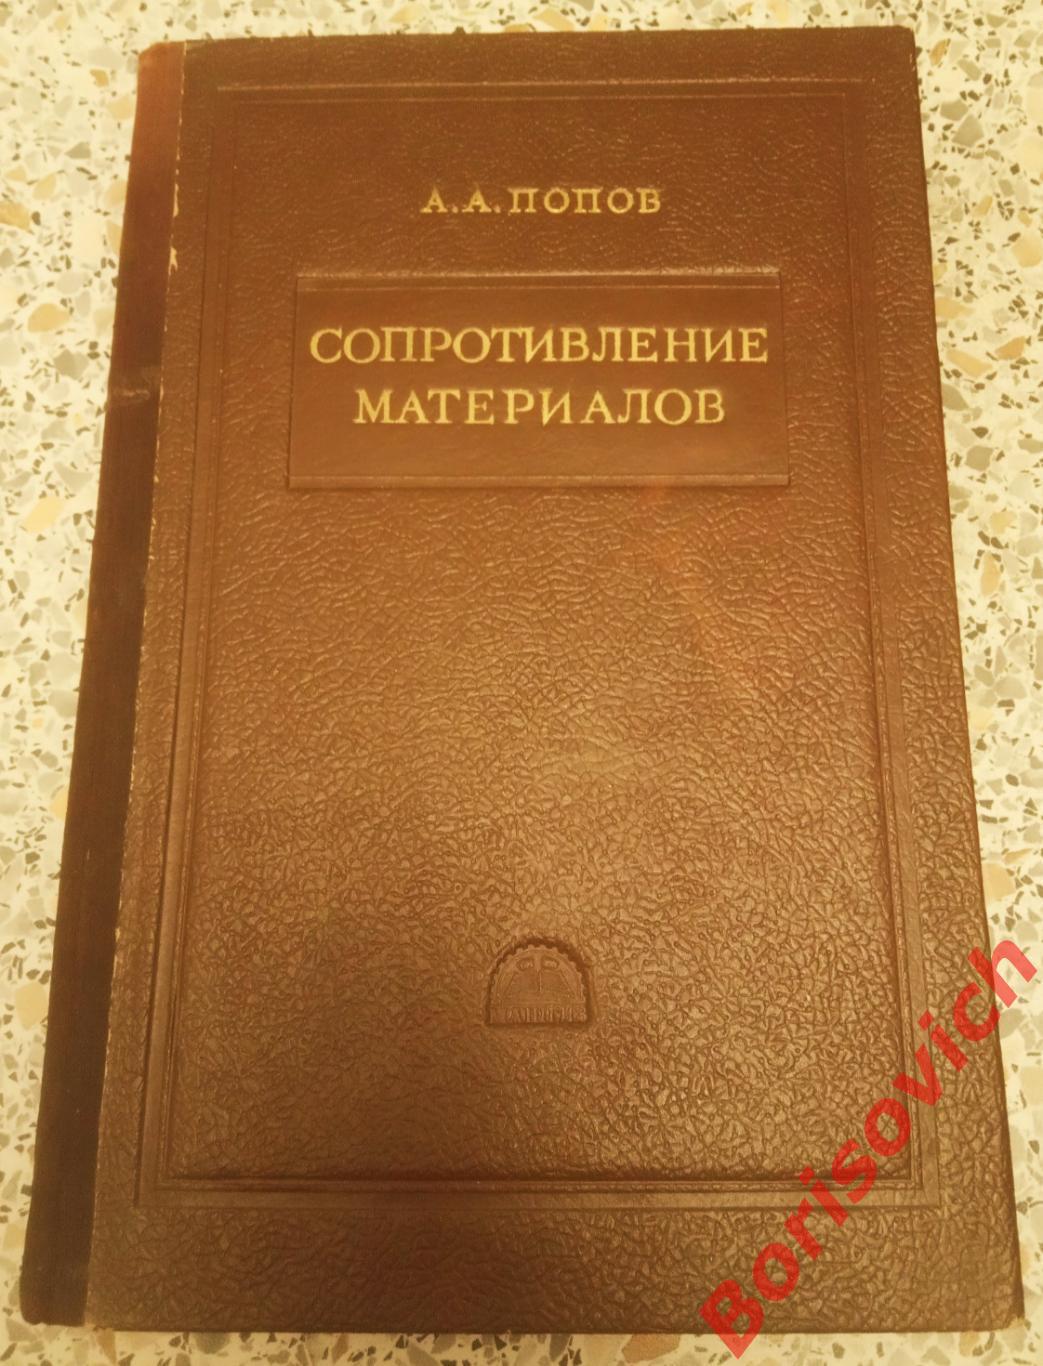 А. А ПОПОВ СОПРОТИВЛЕНИЕ МАТЕРИАЛОВ Москва 1953 г 228 страниц